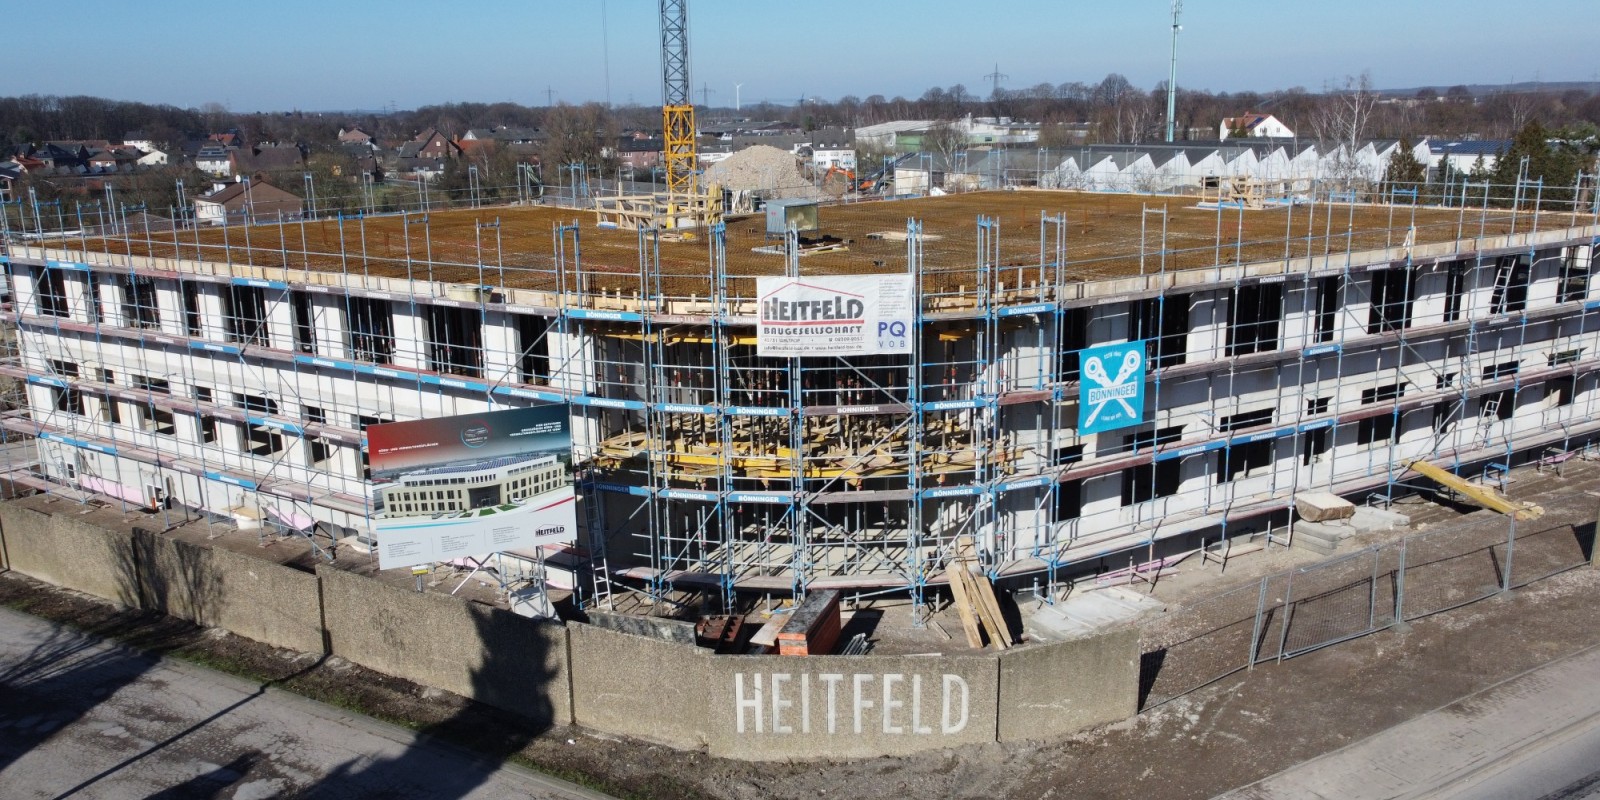 1.000 m² Thermowand, 3.700 m² Klimadecke, davon 2.700 m² LTKH Klimadecke wurden für die Konstruktion des neuen Gewerbegebäudes verwendet. Bild: Heitfeld Baugesellschaft mbH